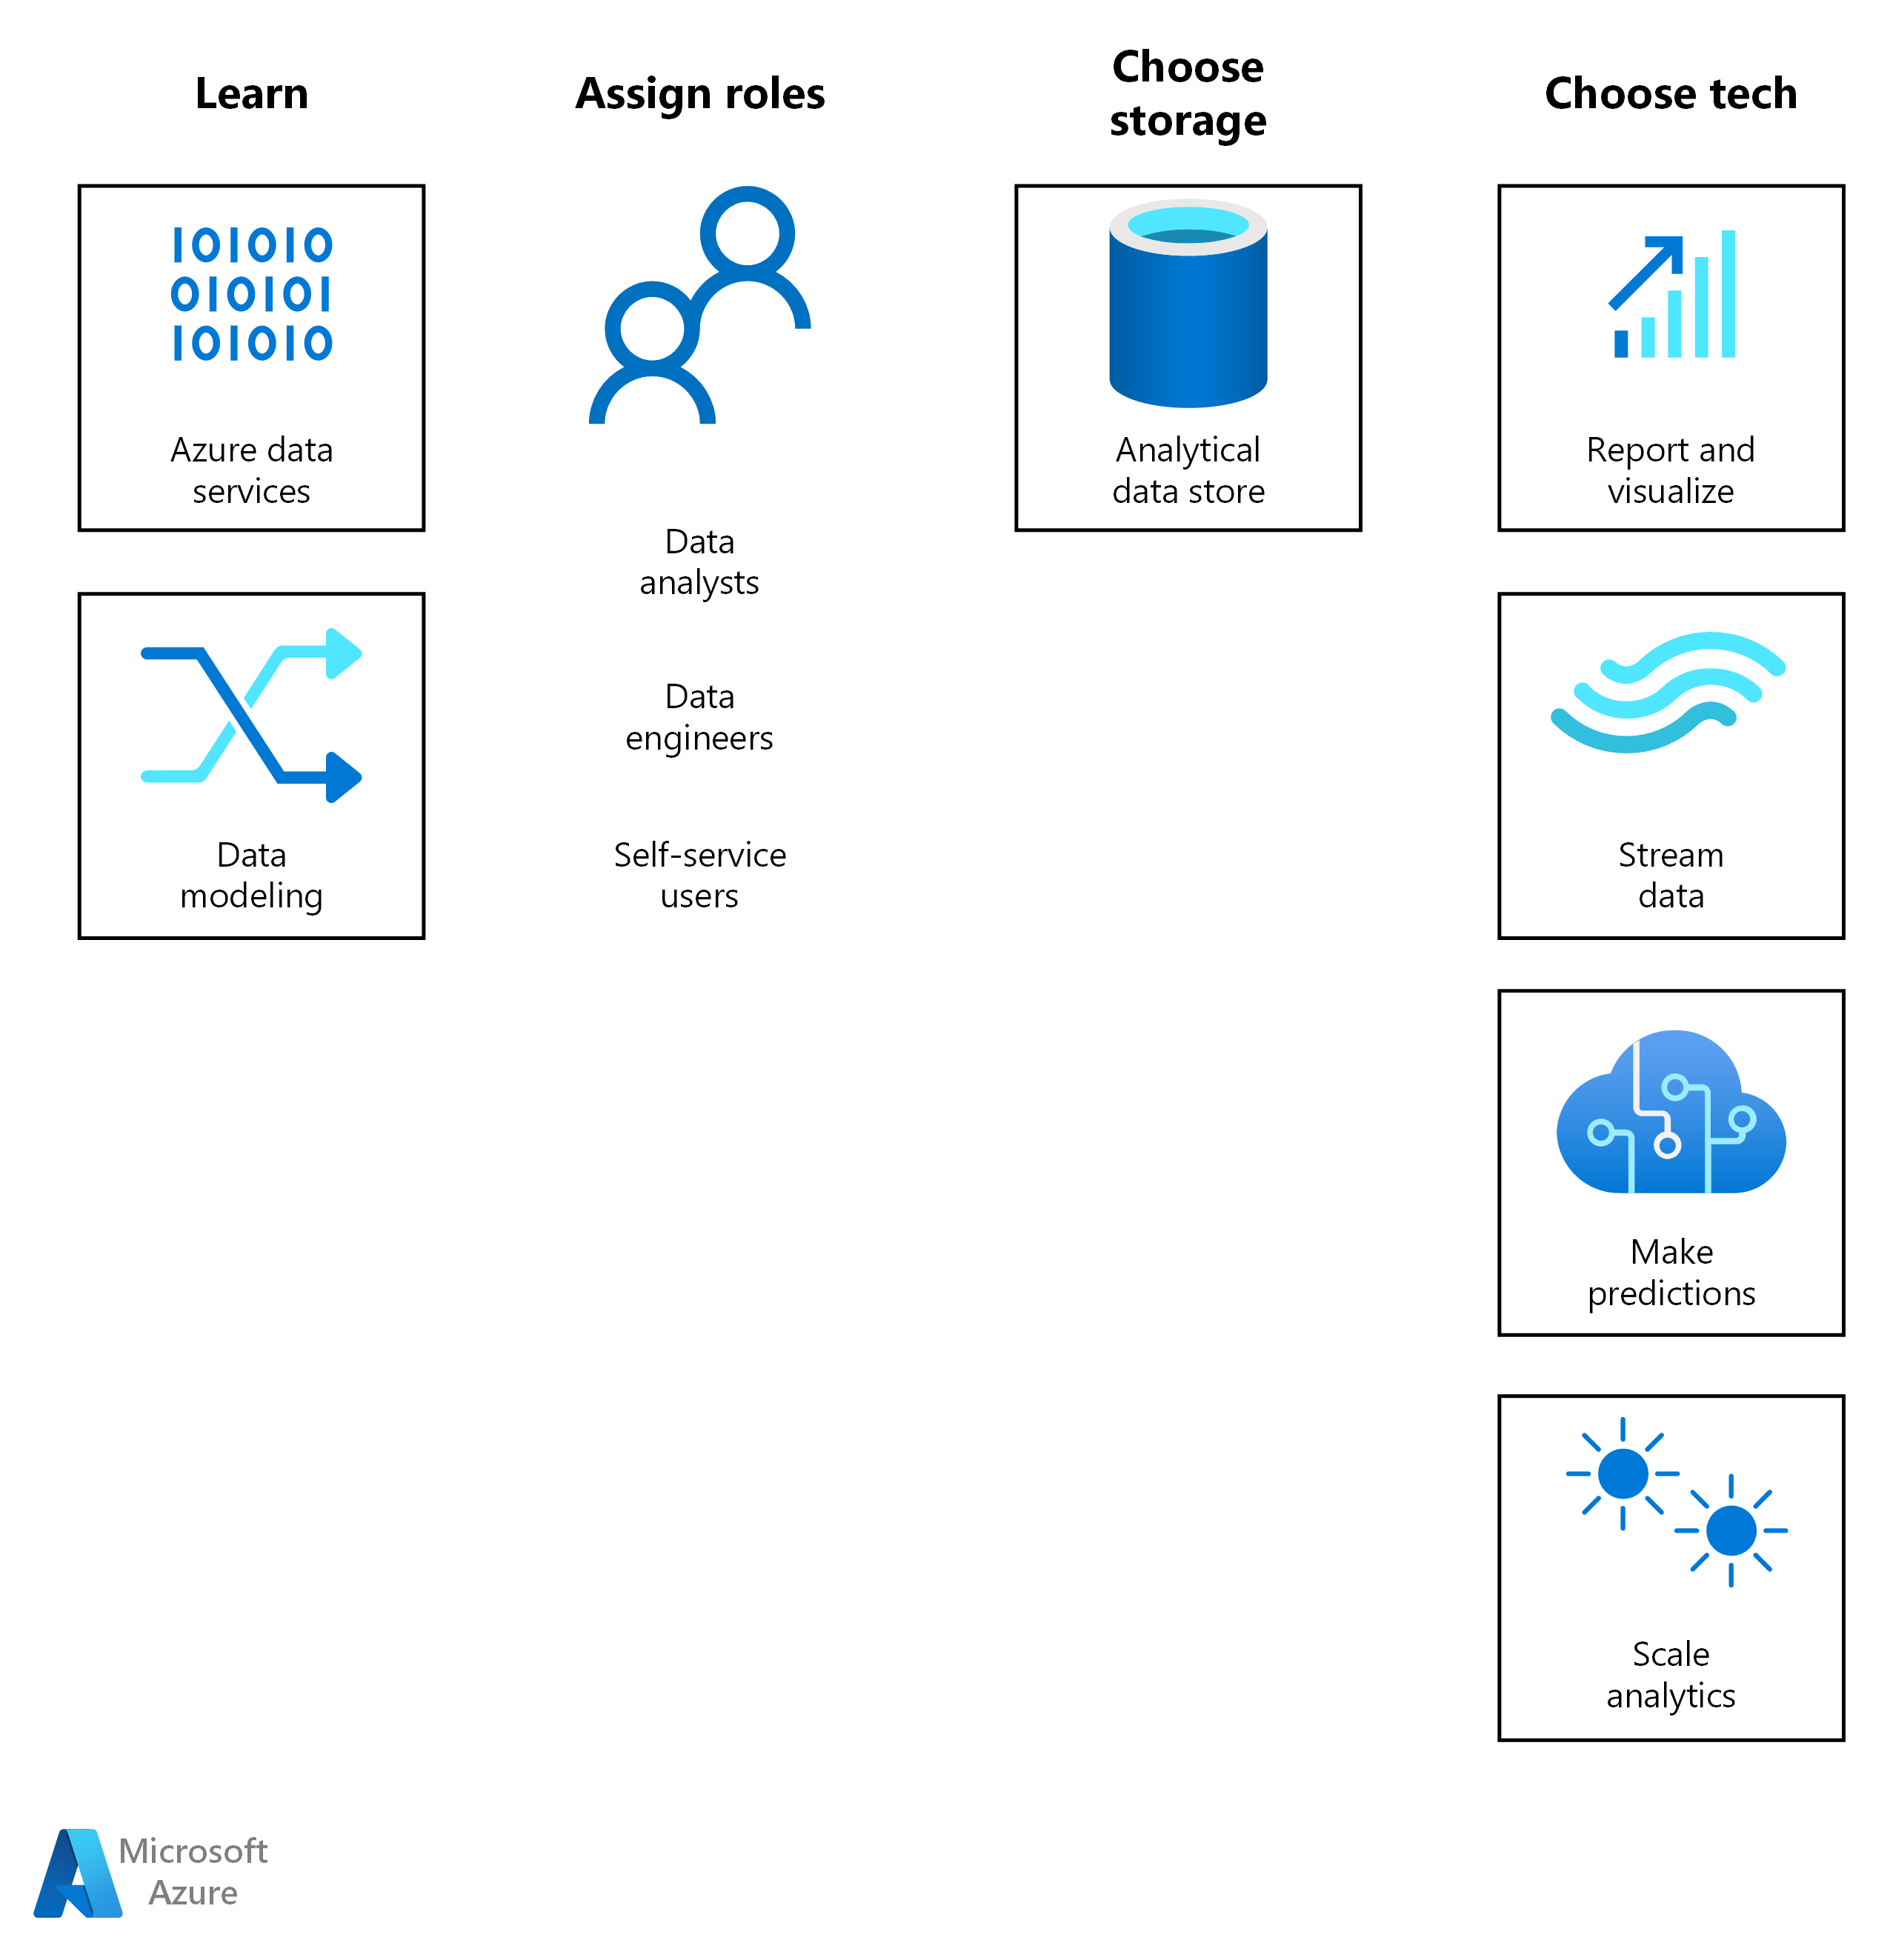 Perjalanan solusi untuk analitik di Azure dimulai dengan mempelajari dan menetapkan peran. Selanjutnya, pilih solusi penyimpanan dan teknologi Azure BI atau AI untuk beban kerja.